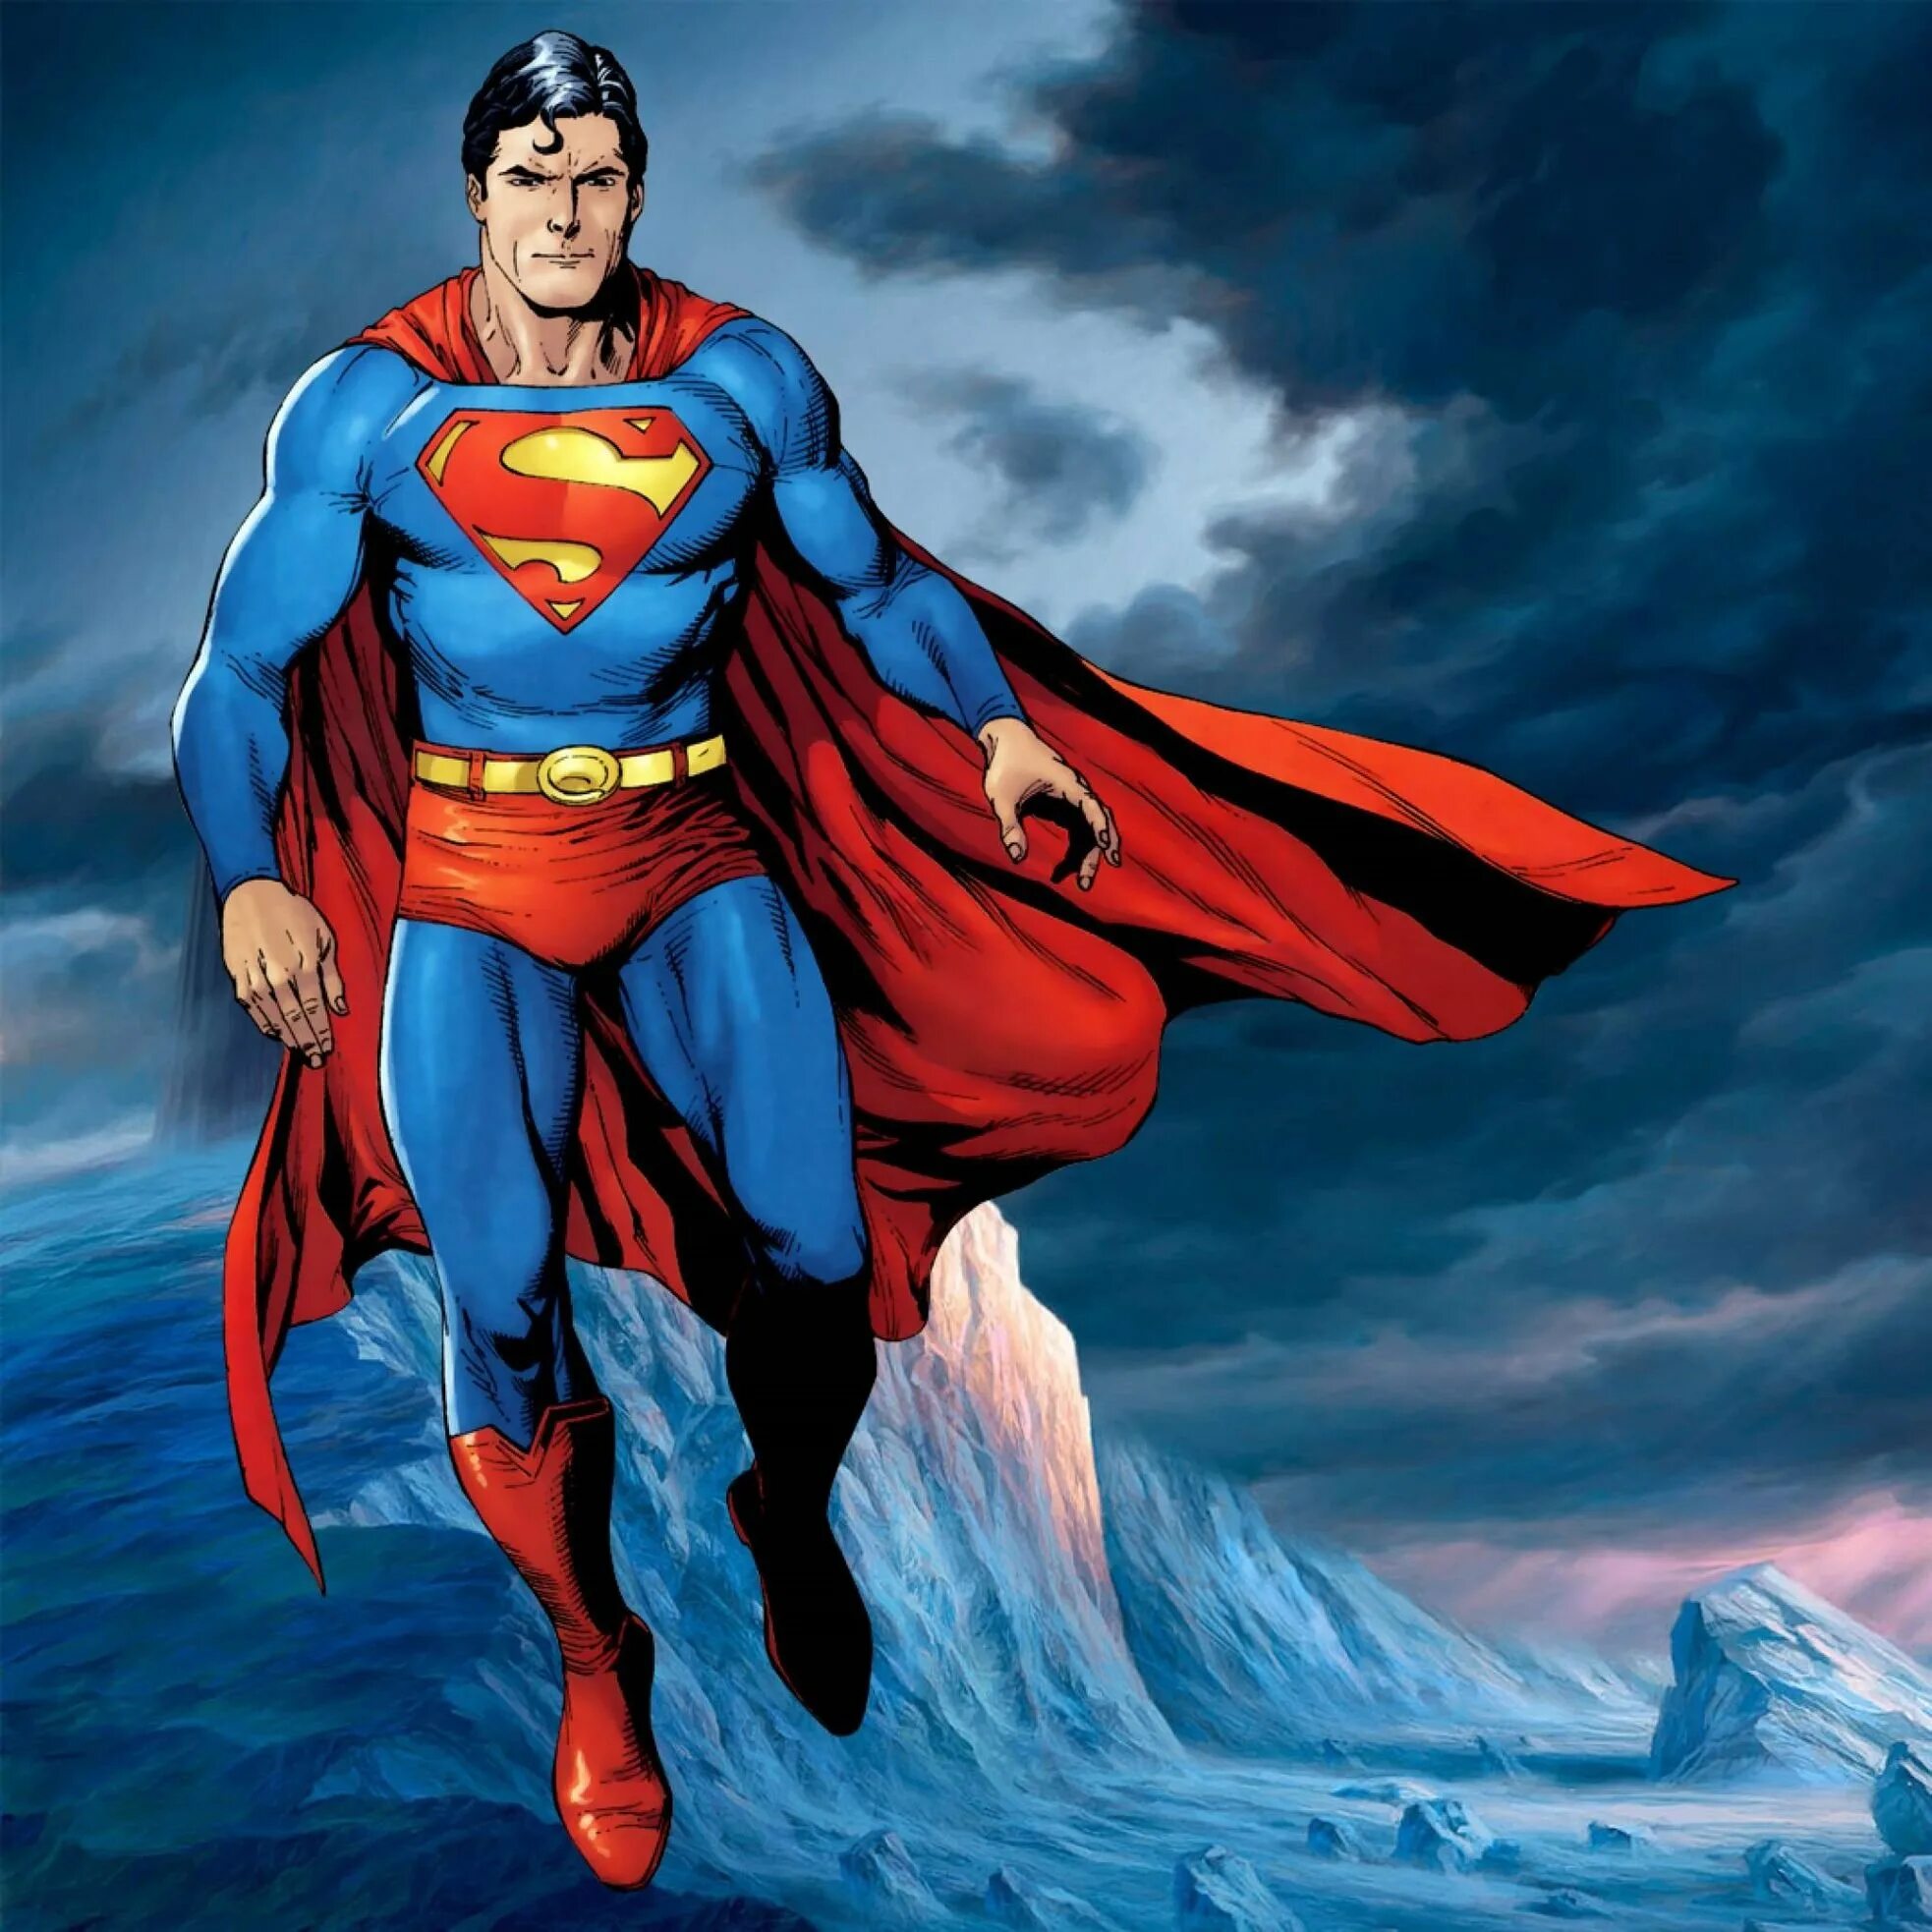 Кларк Кент Супермен. Кларк Кент Марвел. Супермен Макс Флейшер. Комиксы Марвел Супермен. Картинки супер героев